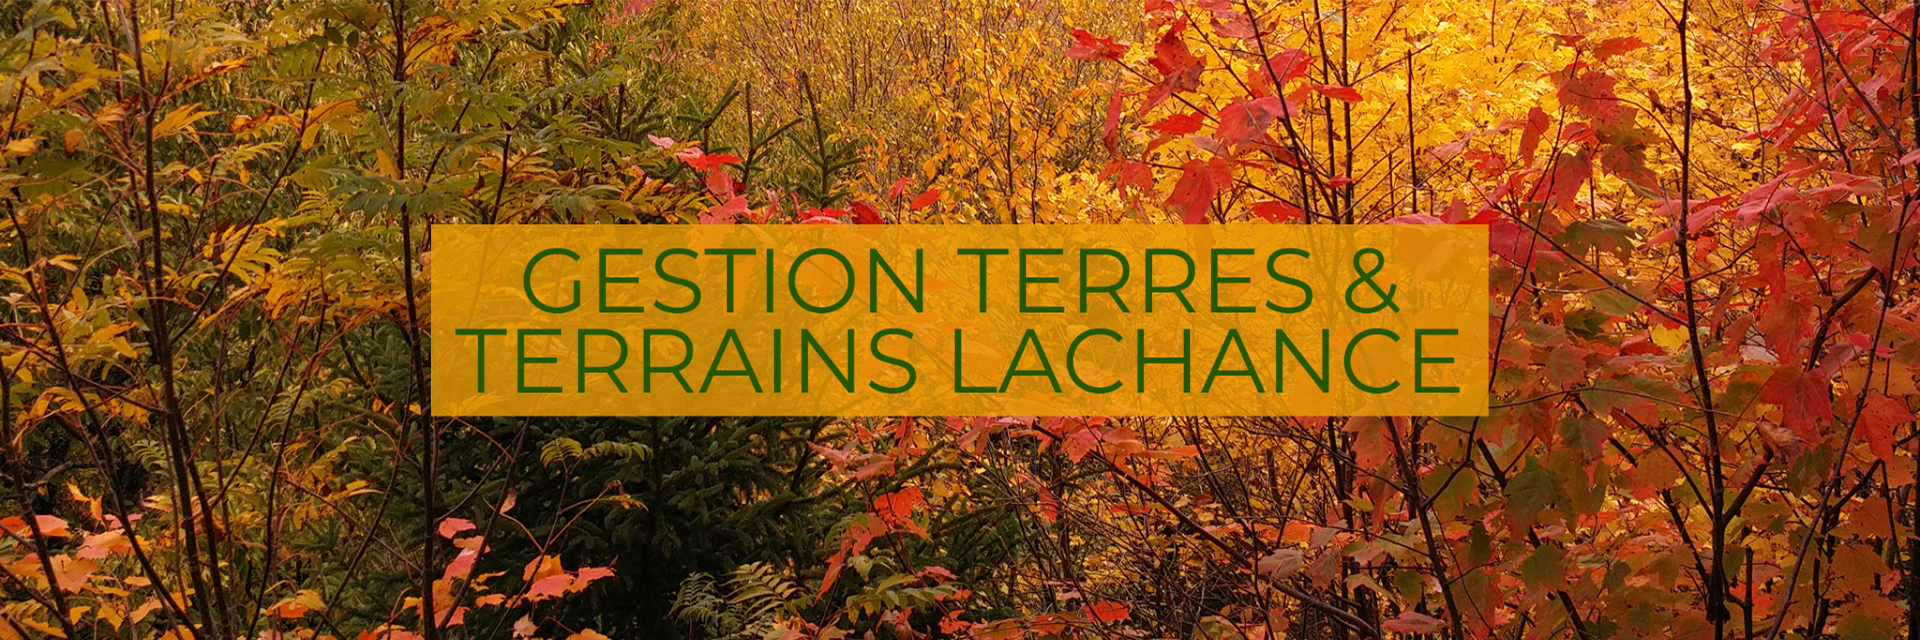 GESTION TERRES & TERRAINS LACHANCE
Entretien d'arbres dans la région de Portneuf et de Québec